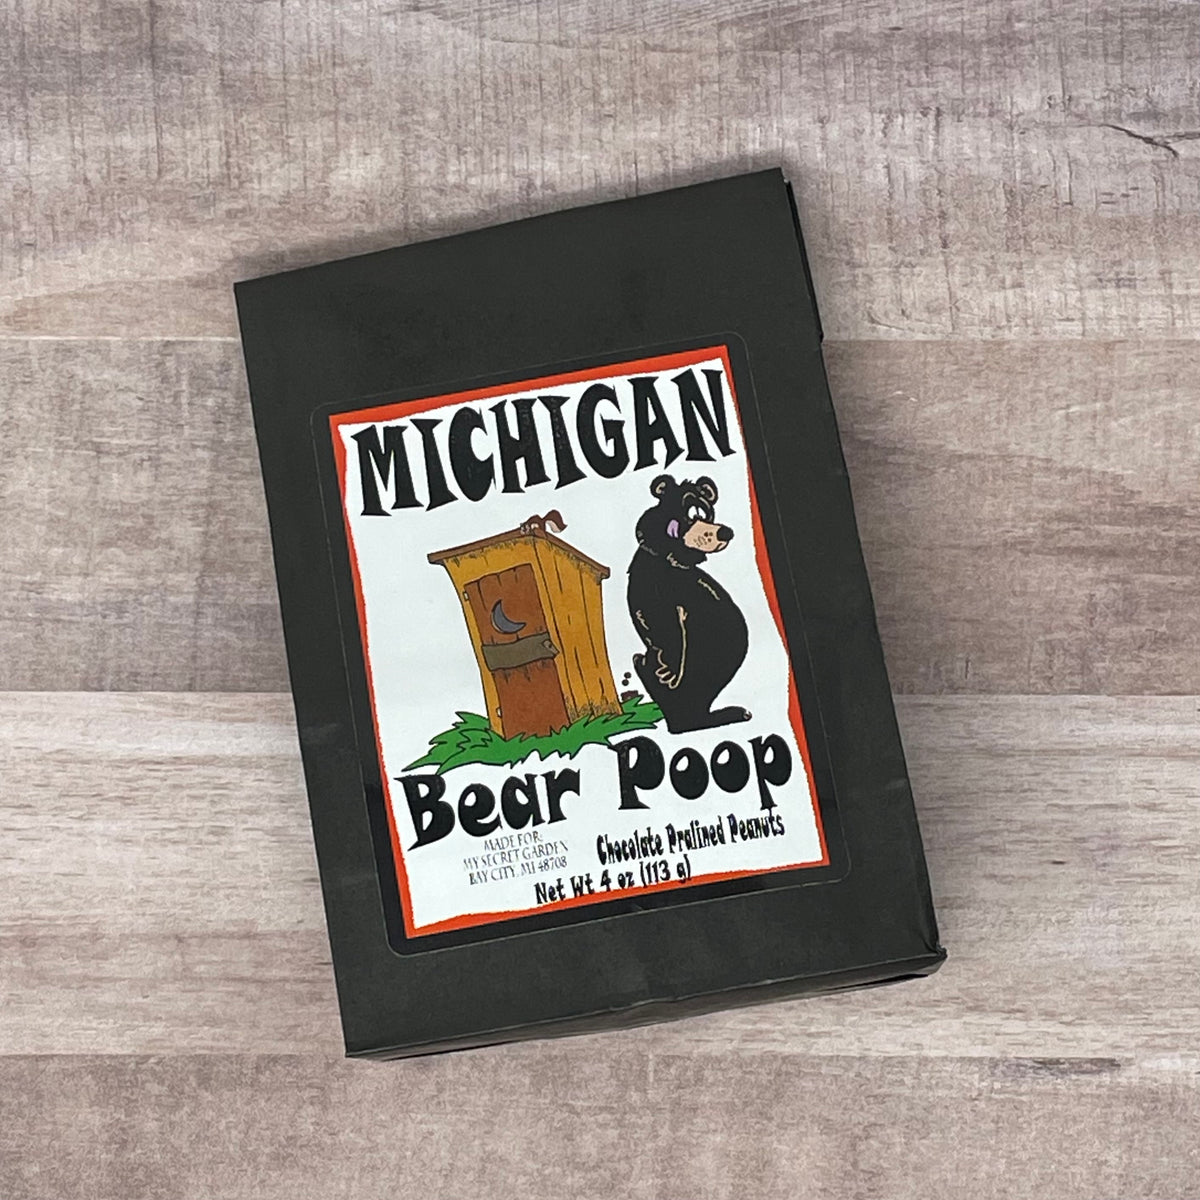 Michigan Bear Poop Chocolate Praline Peanuts